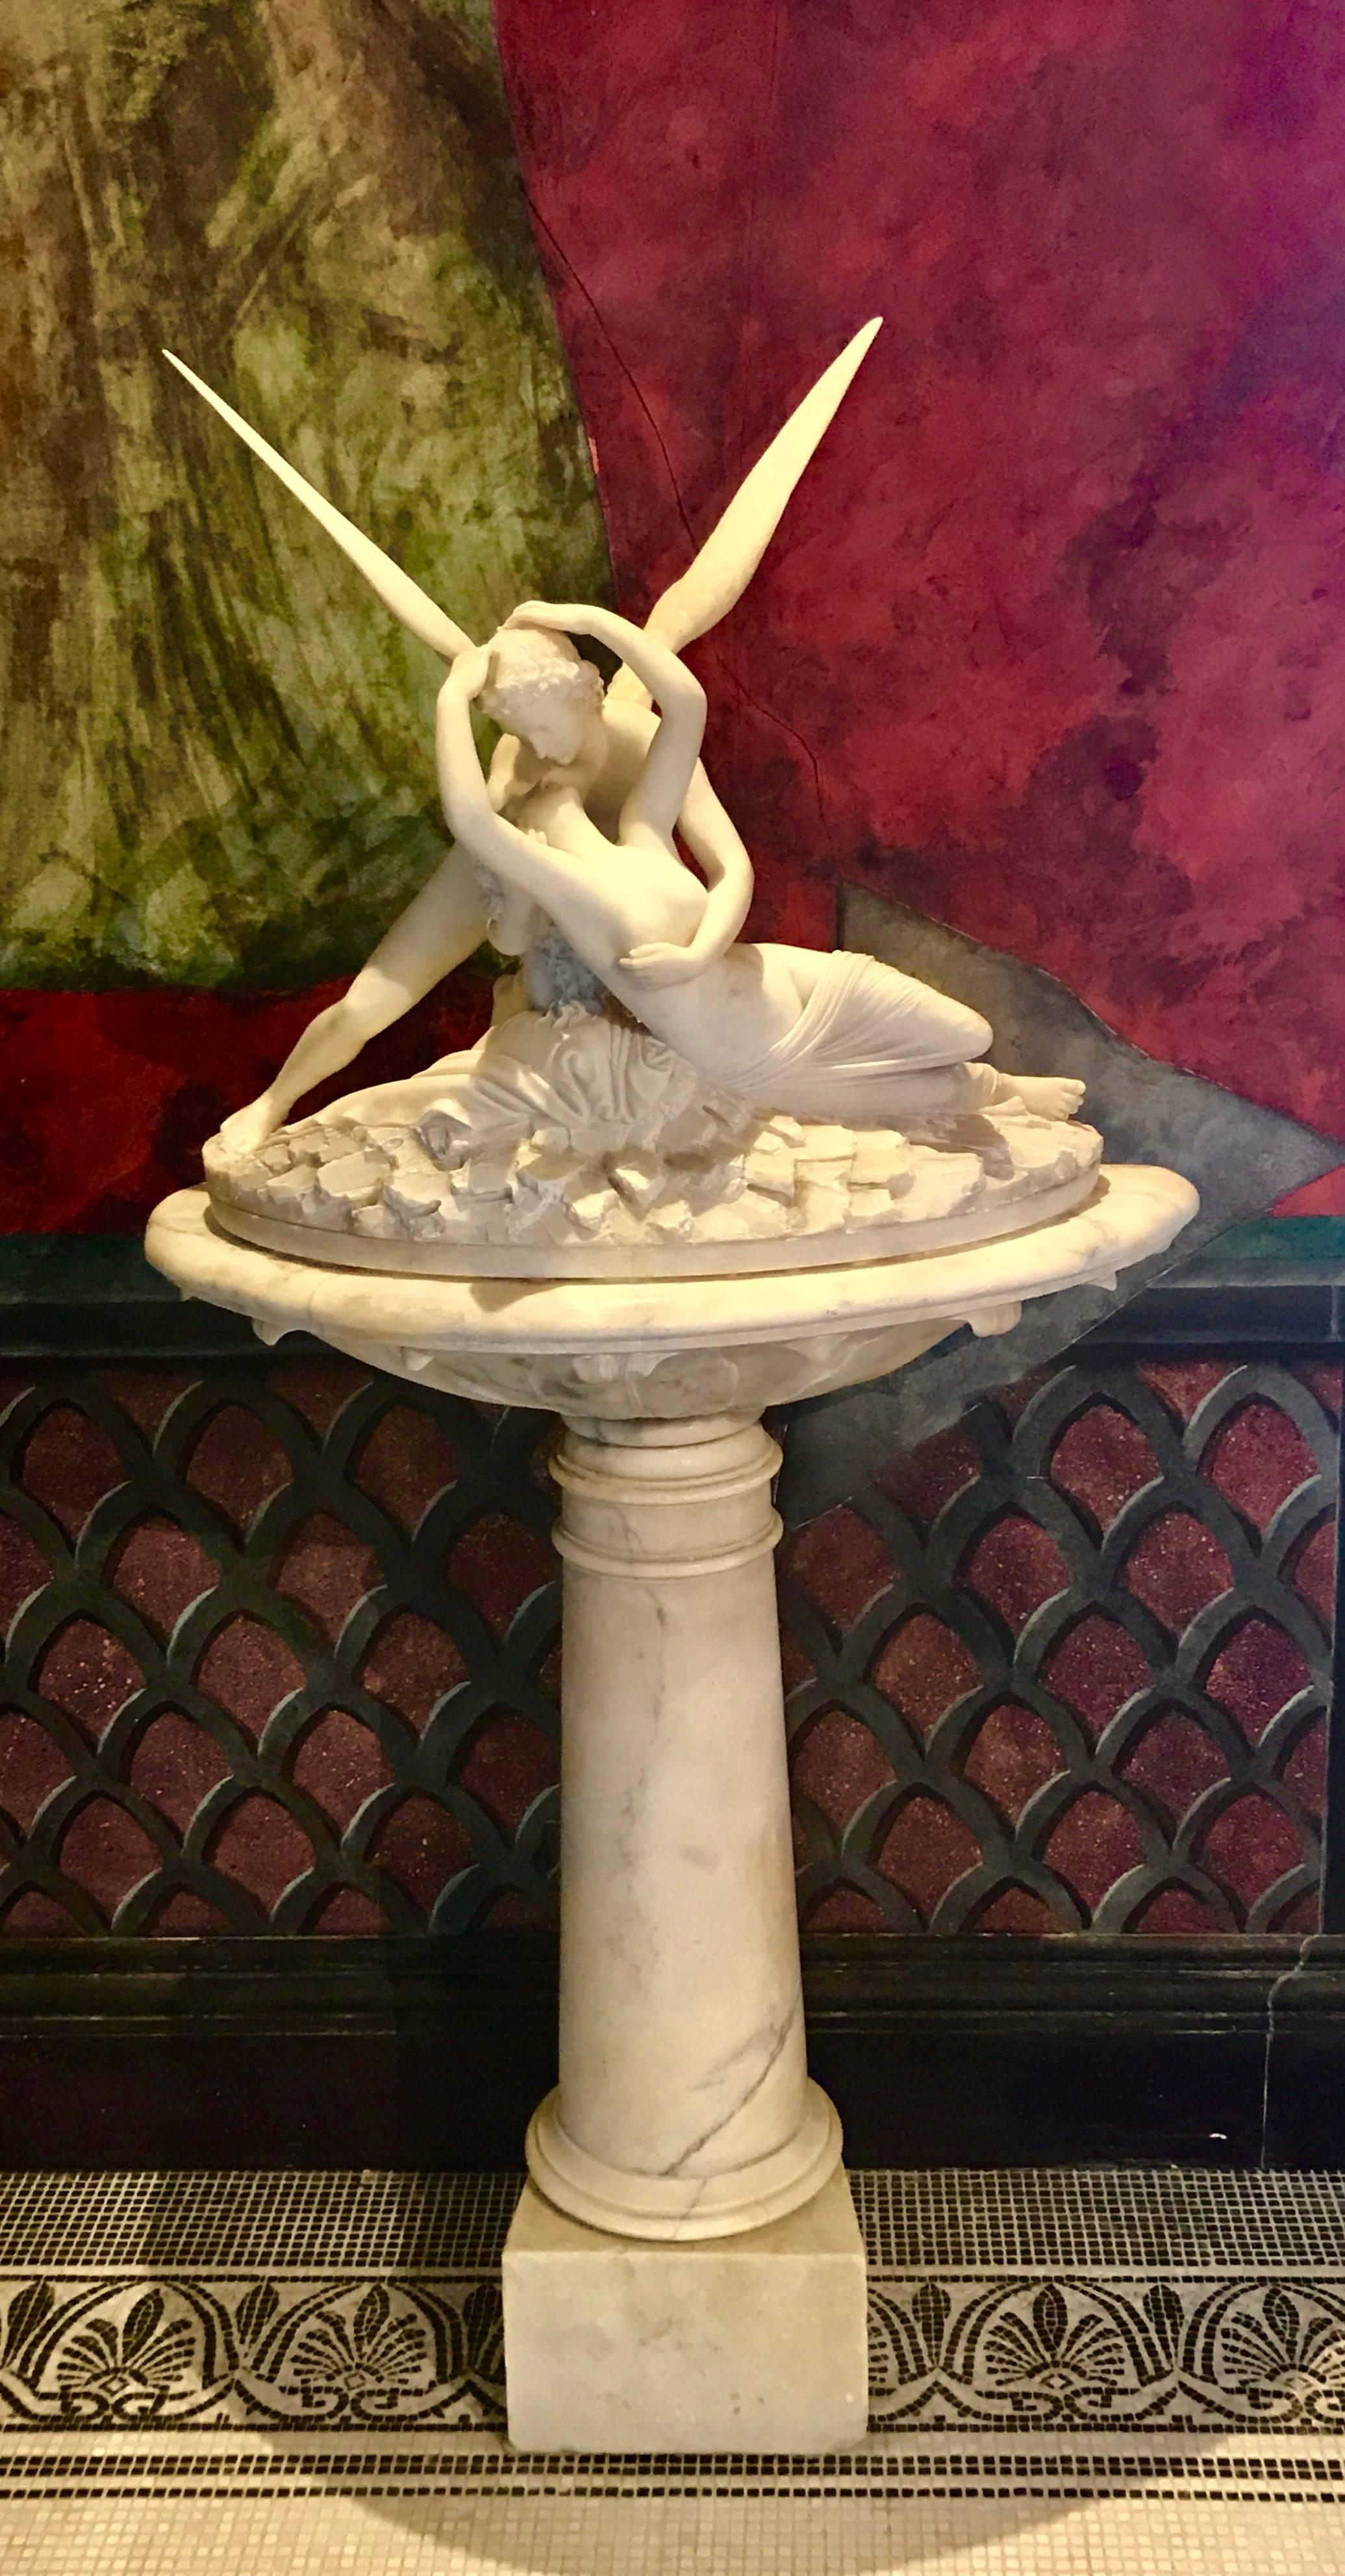 Eine Skulptur des Gottes Eros und der Psyche auf einem großen, konformen Sockel. Eine der bedeutendsten klassischen Skulpturen der Geschichte.
Psyche durch Amors Kuss wiederbelebt 
von Antonio Canova (1757-1822).
Ausgestellt im Louvre-Museum und in